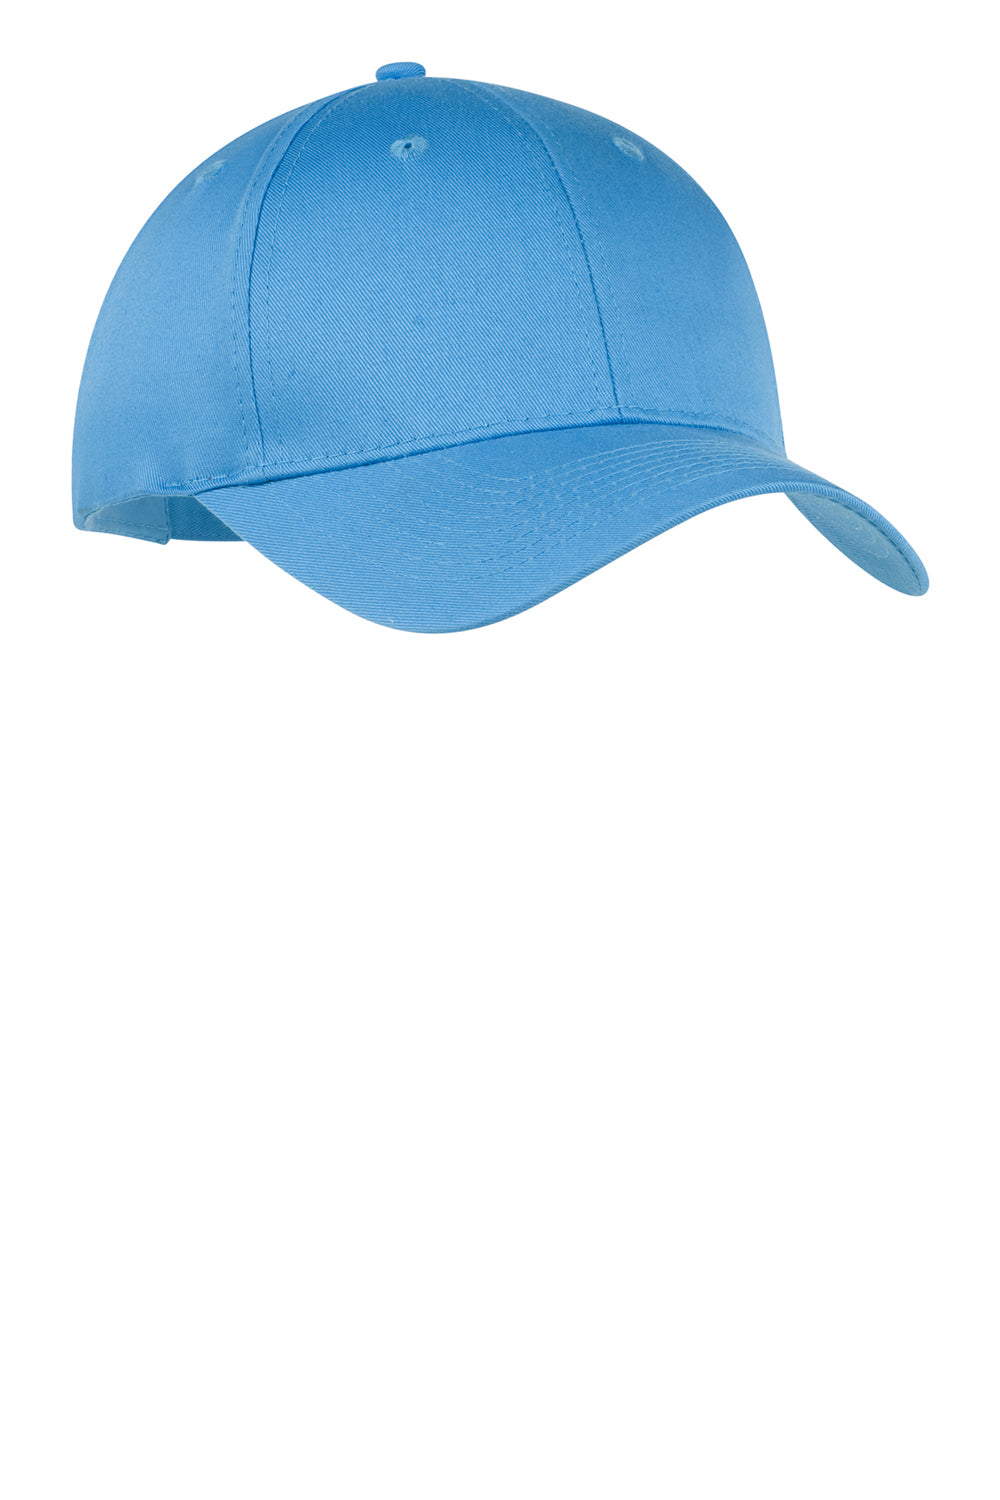 Port & Company YCP80 Twill Hat Carolina Blue Front